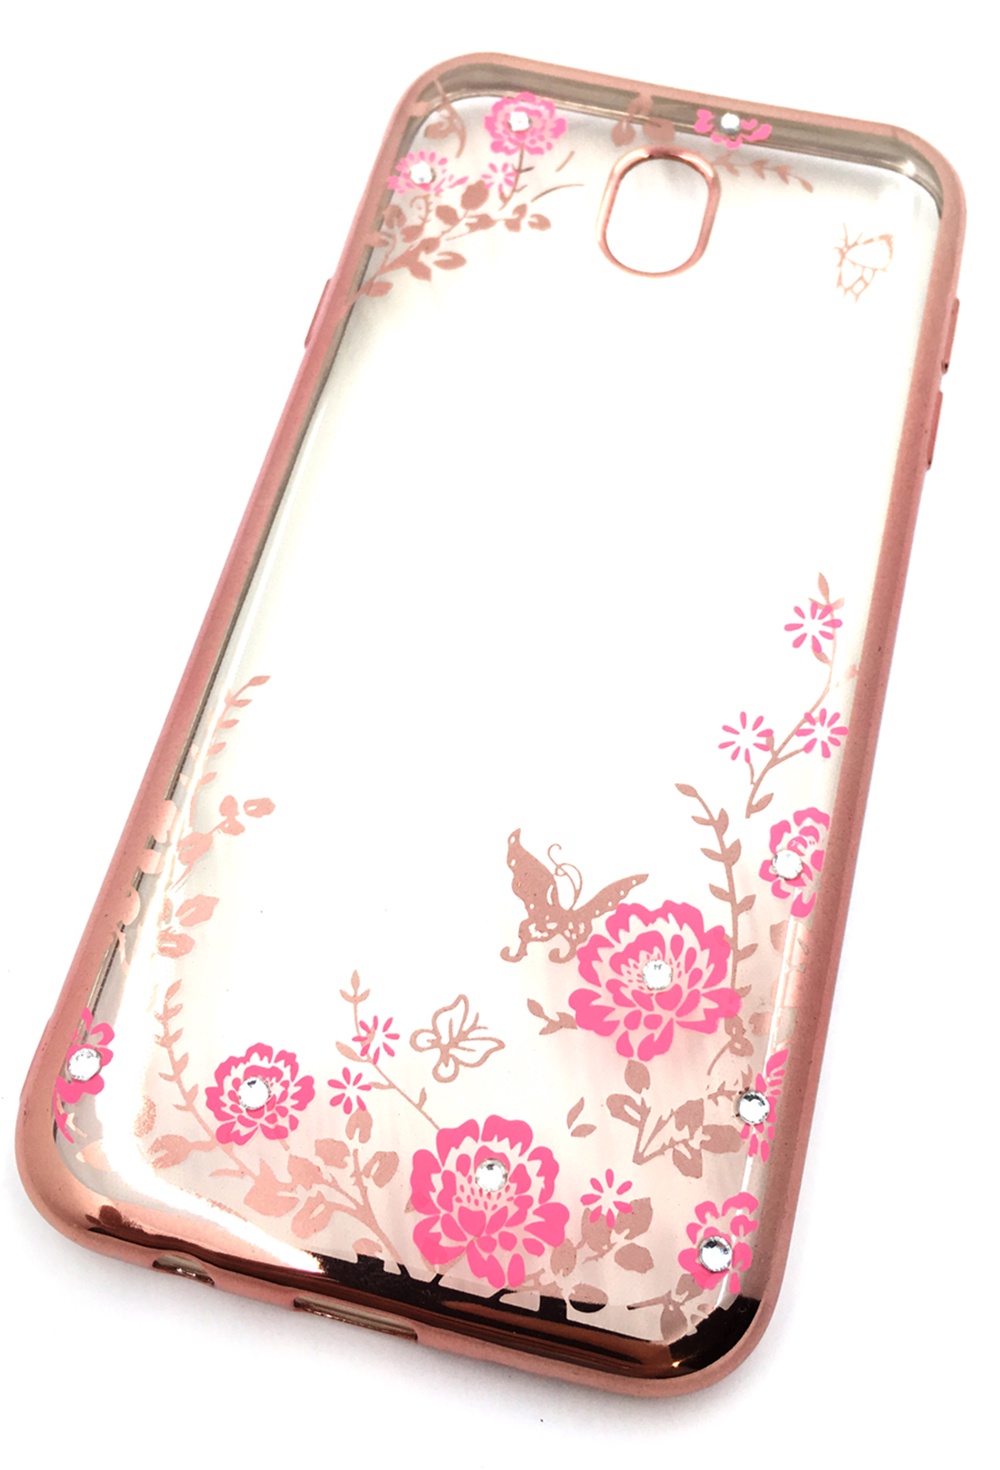 Чехол для сотового телефона Мобильная мода Samsung J7 2017 Силиконовая, прозрачная накладка со стразами, 6972R, розовый